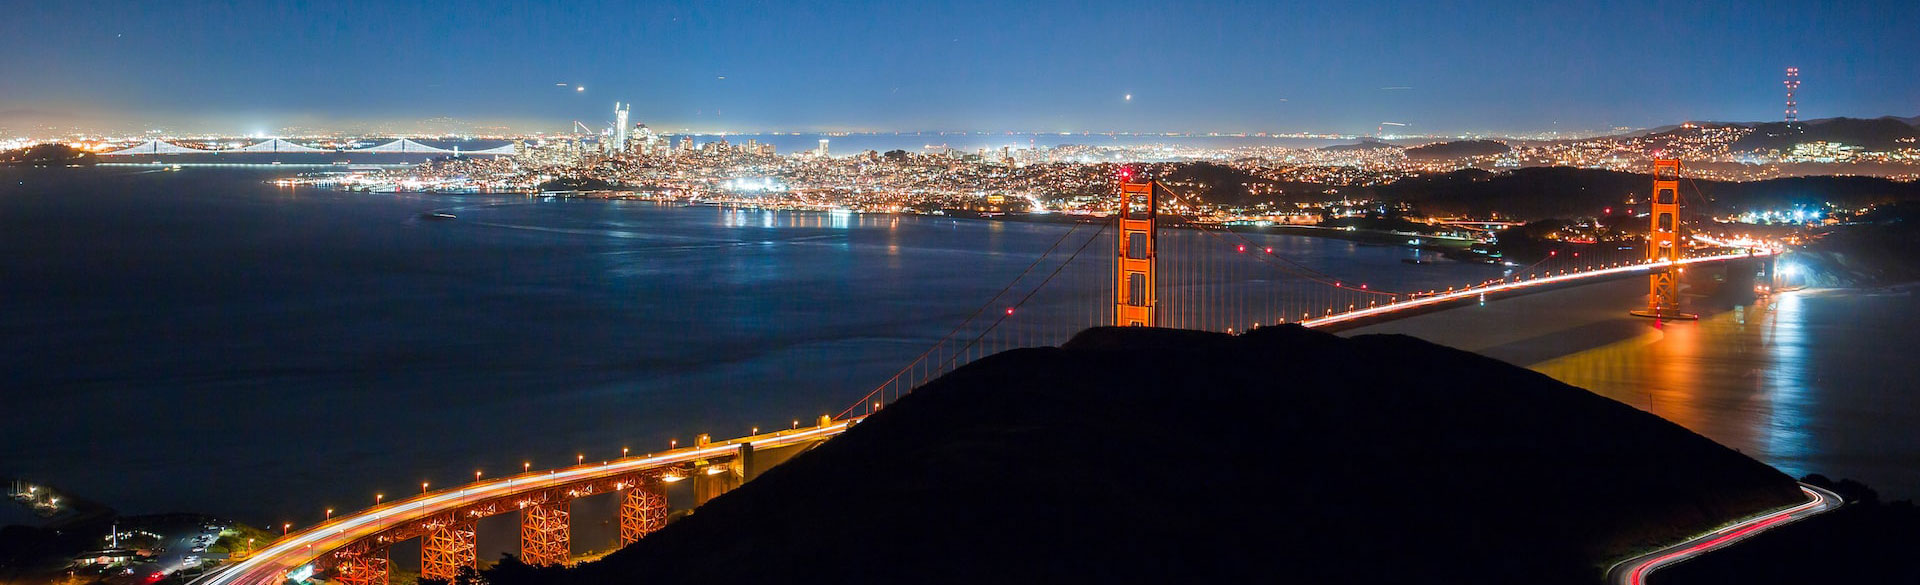 Baie de San Francisco et Golden Gate Bridge de nuit